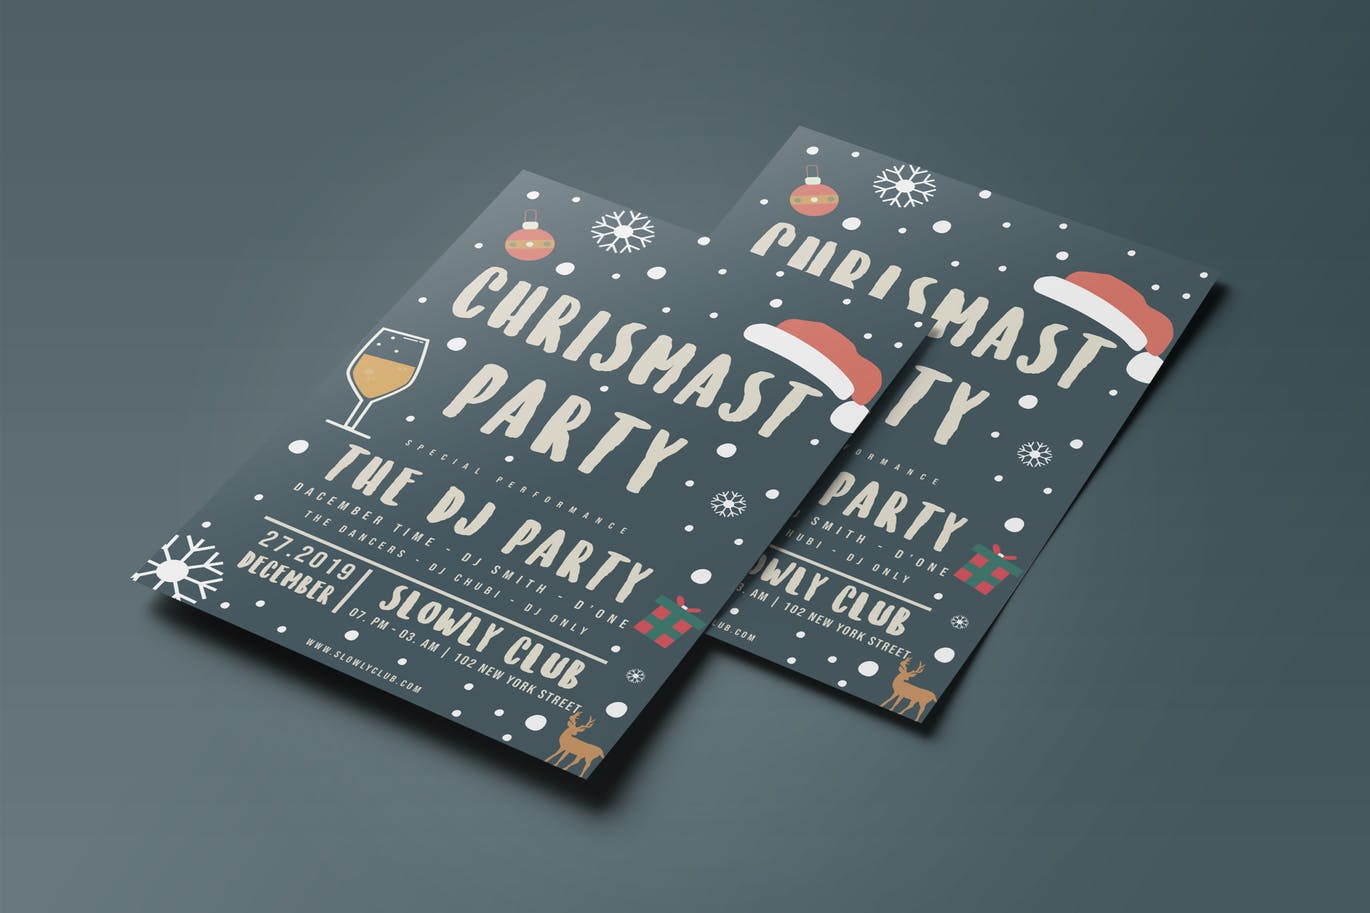 圣诞节DJ音乐派对海报传单设计模板02 Christmas Party Flyer 02插图